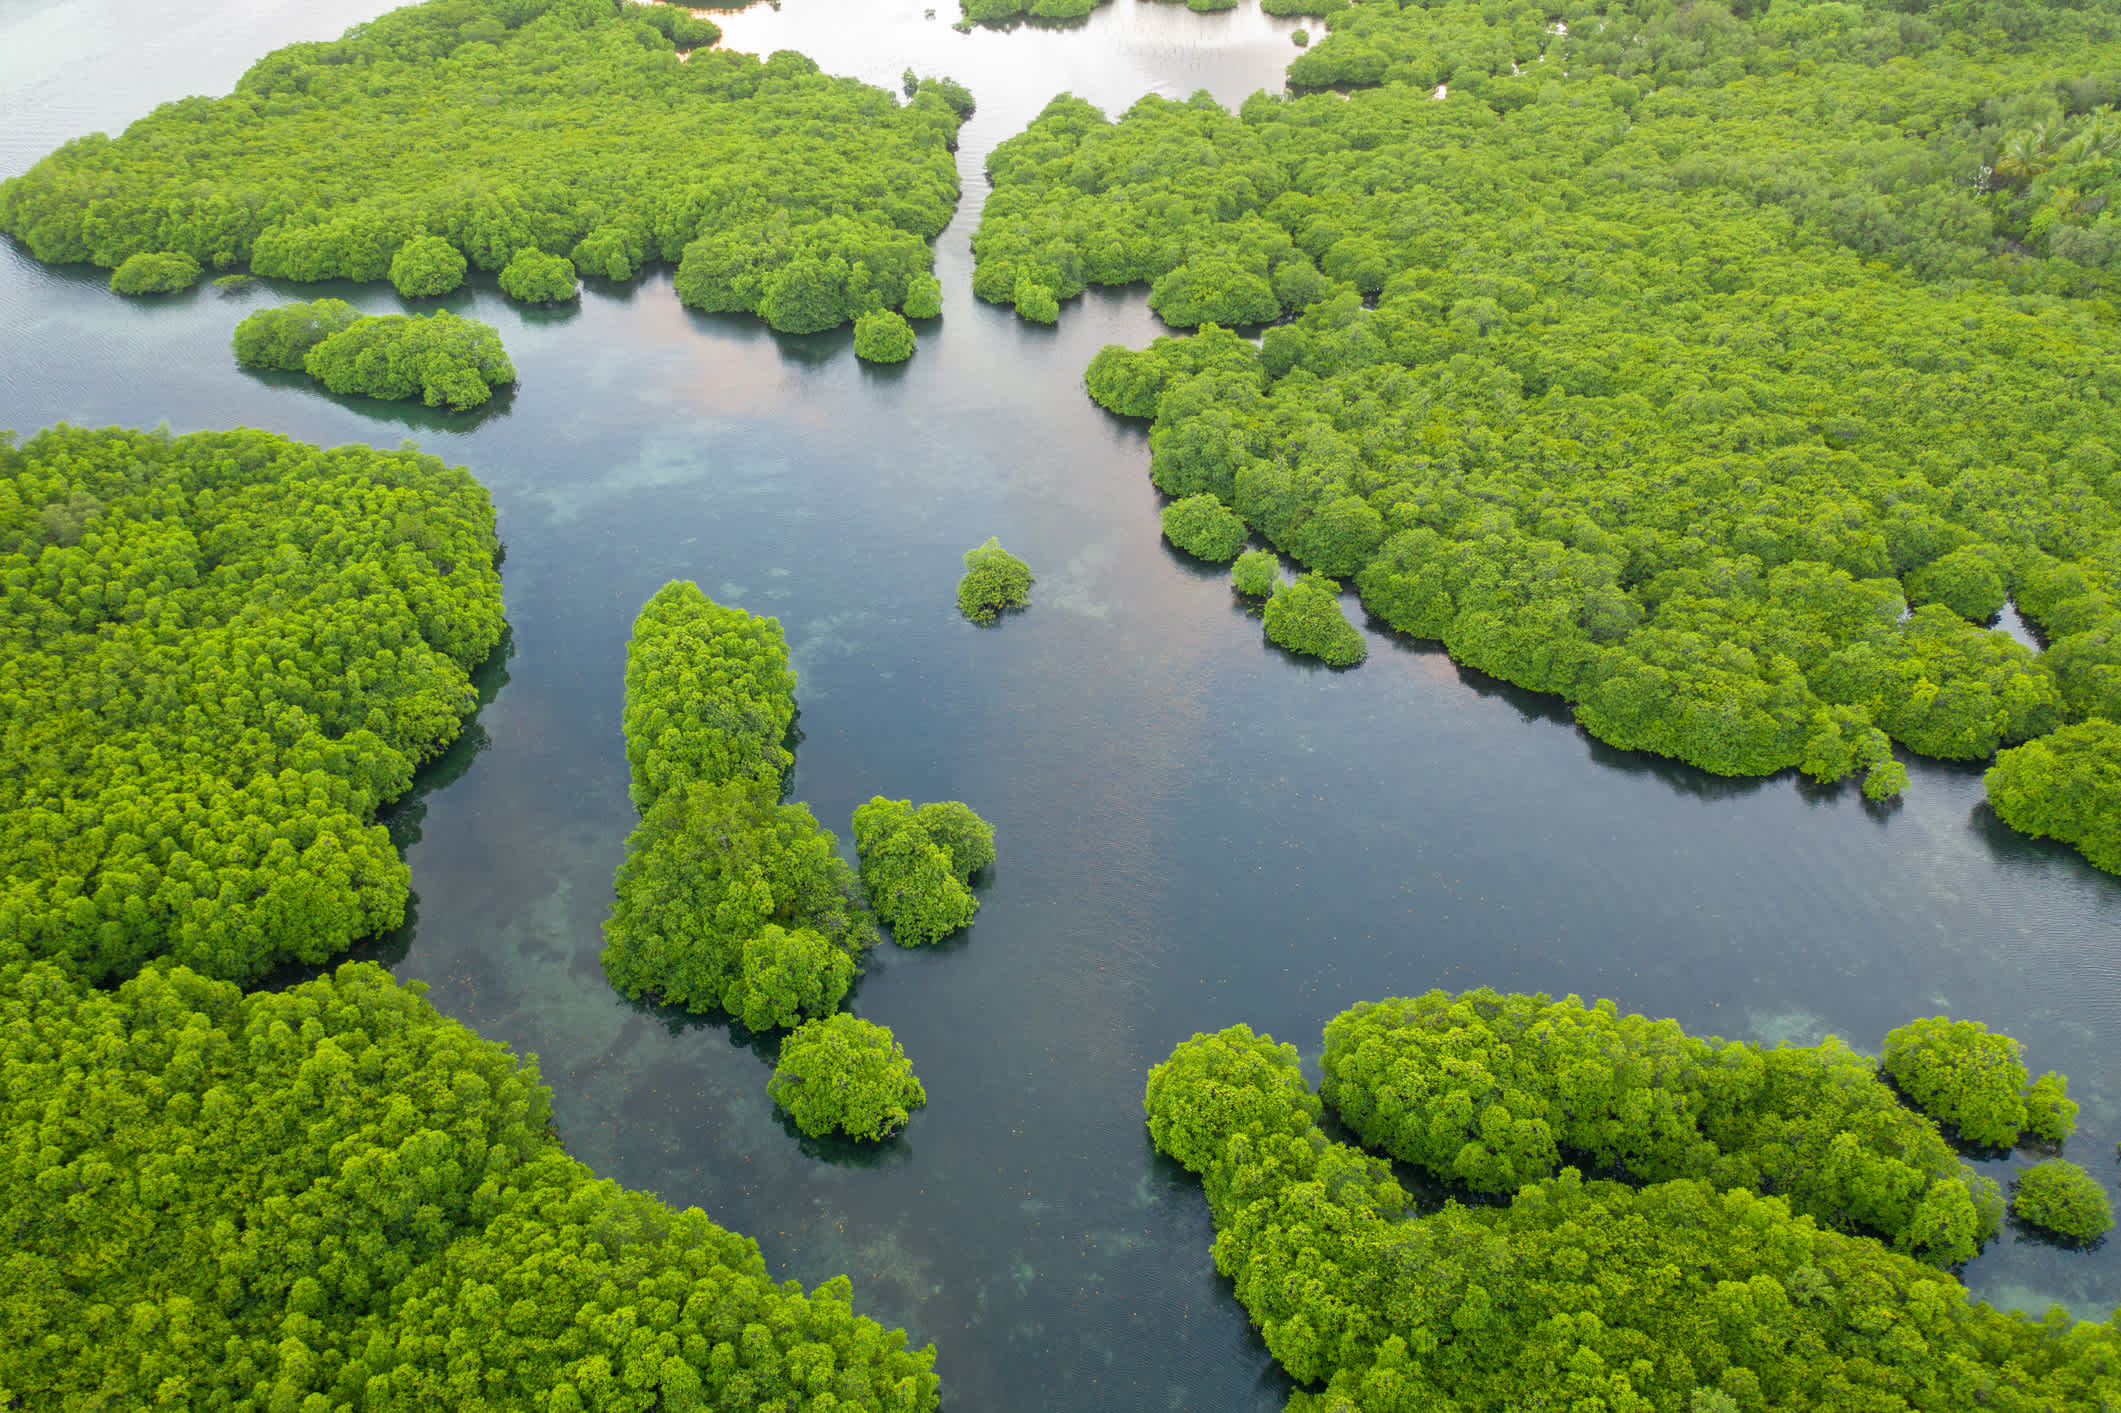 Vue aérienne des îles de l'archipel d'Anavilhanas sur le fleuve Rio Negro, en Amazonie, au Brésil.